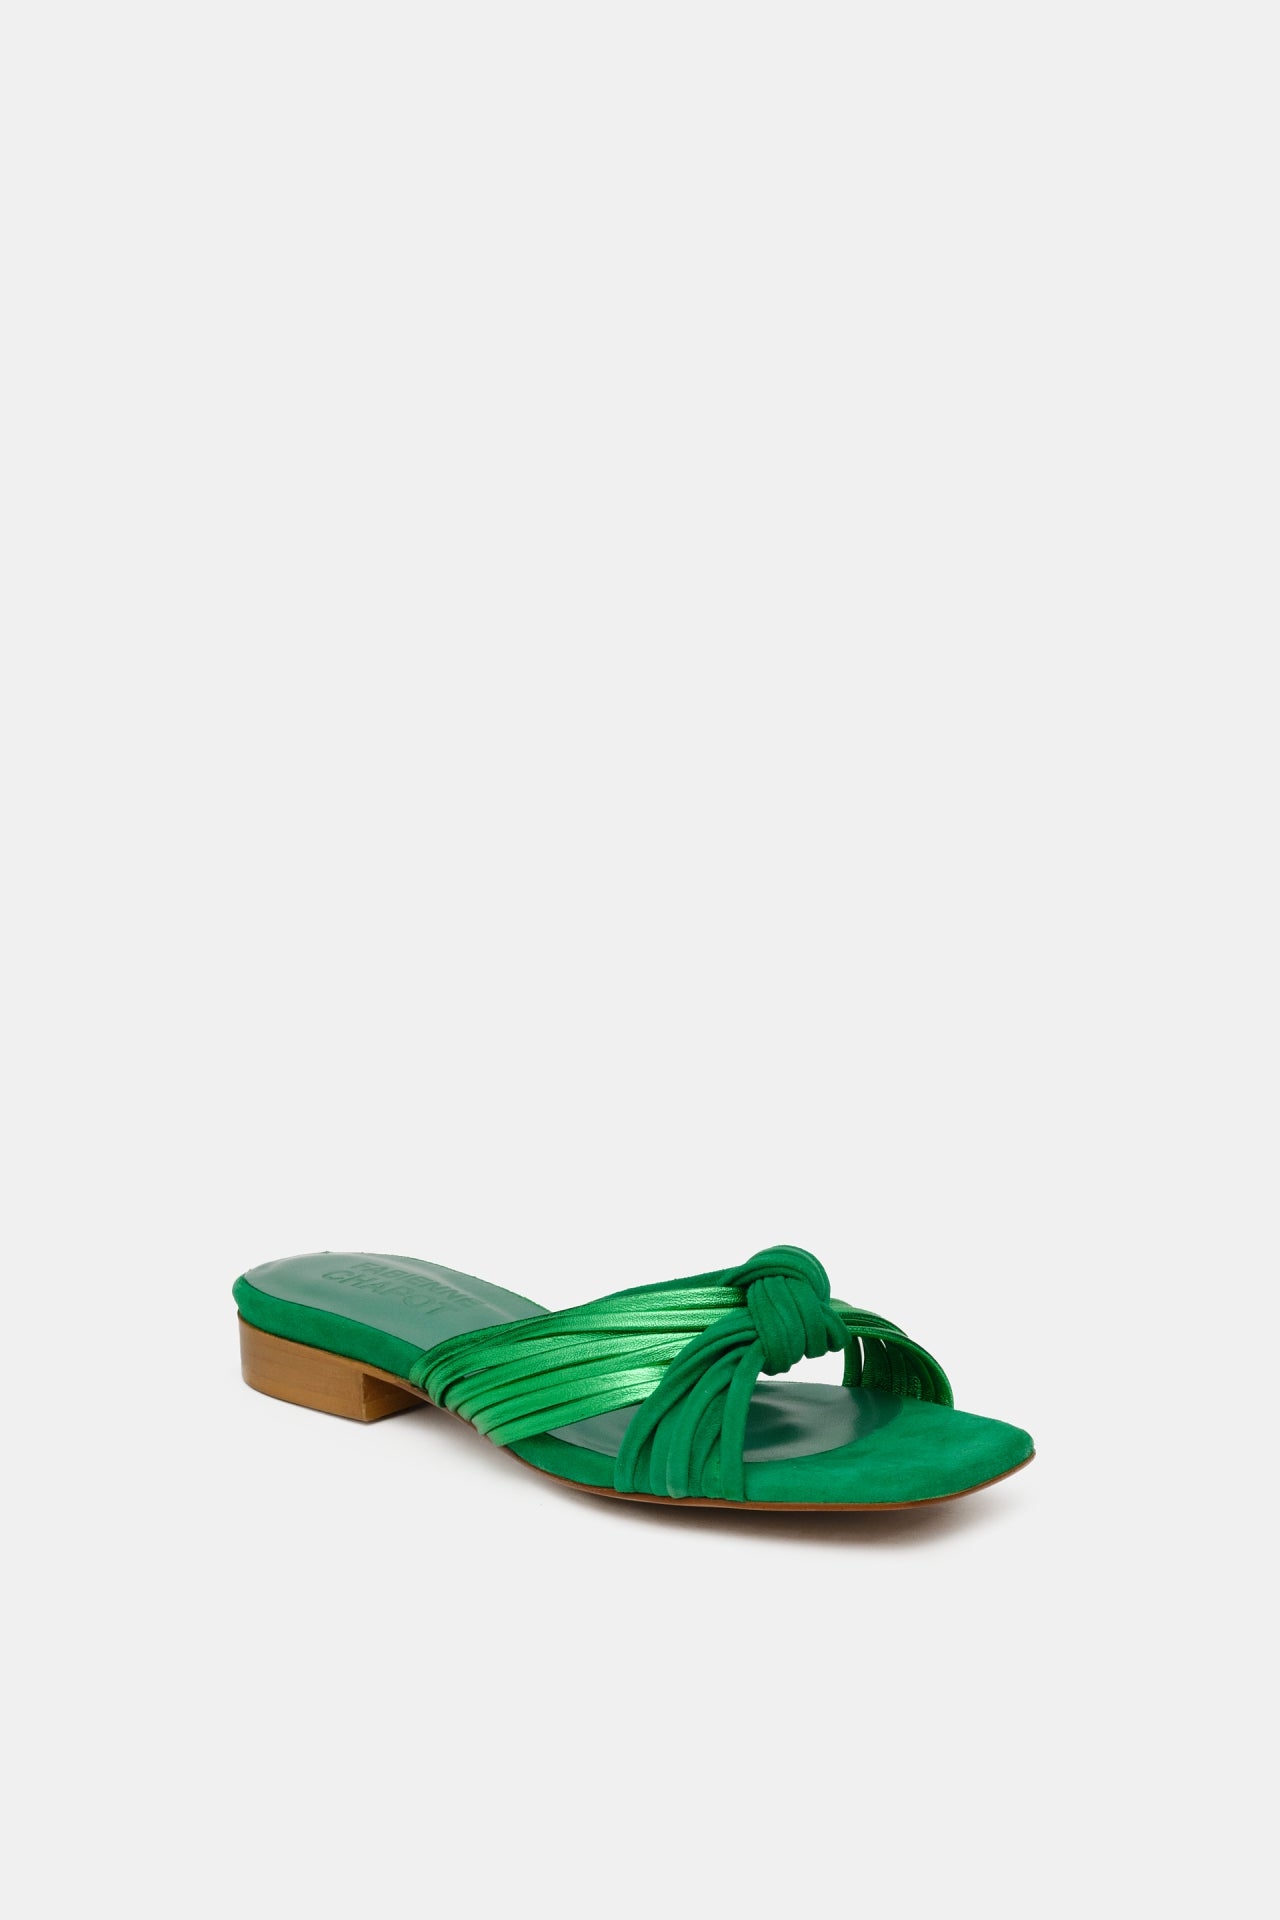 Momo Sandal | Green Metallic